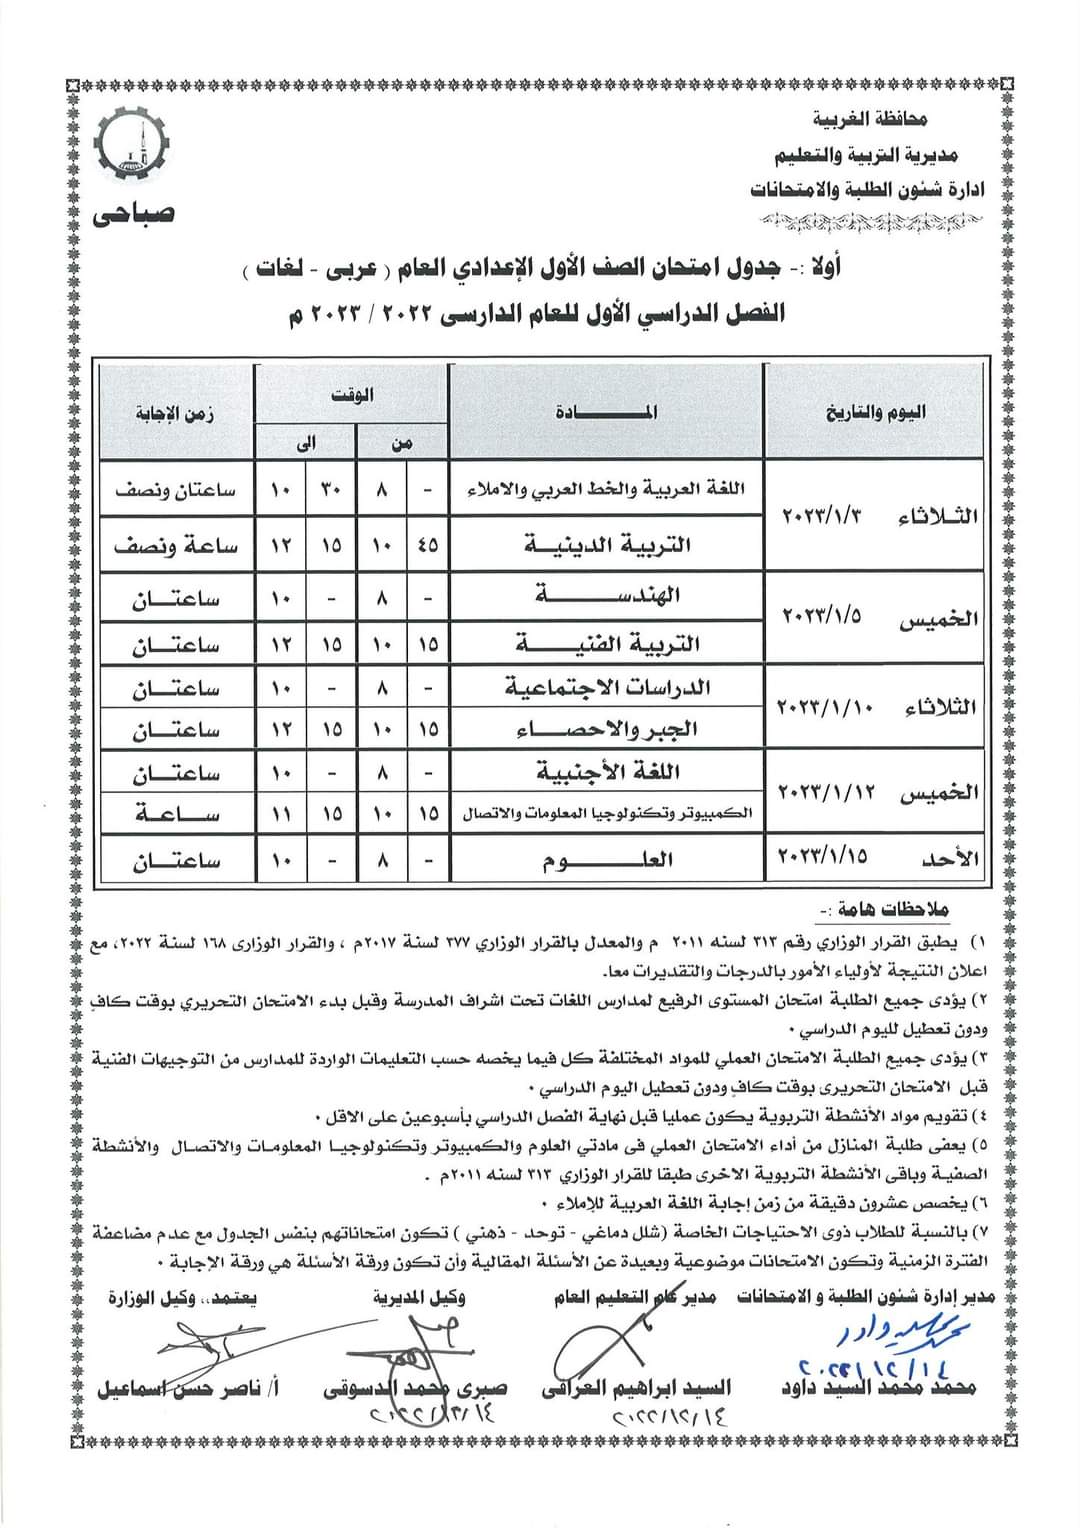 جداول امتحانات الفصل الدراسى الأول لصفوف النقل (12)